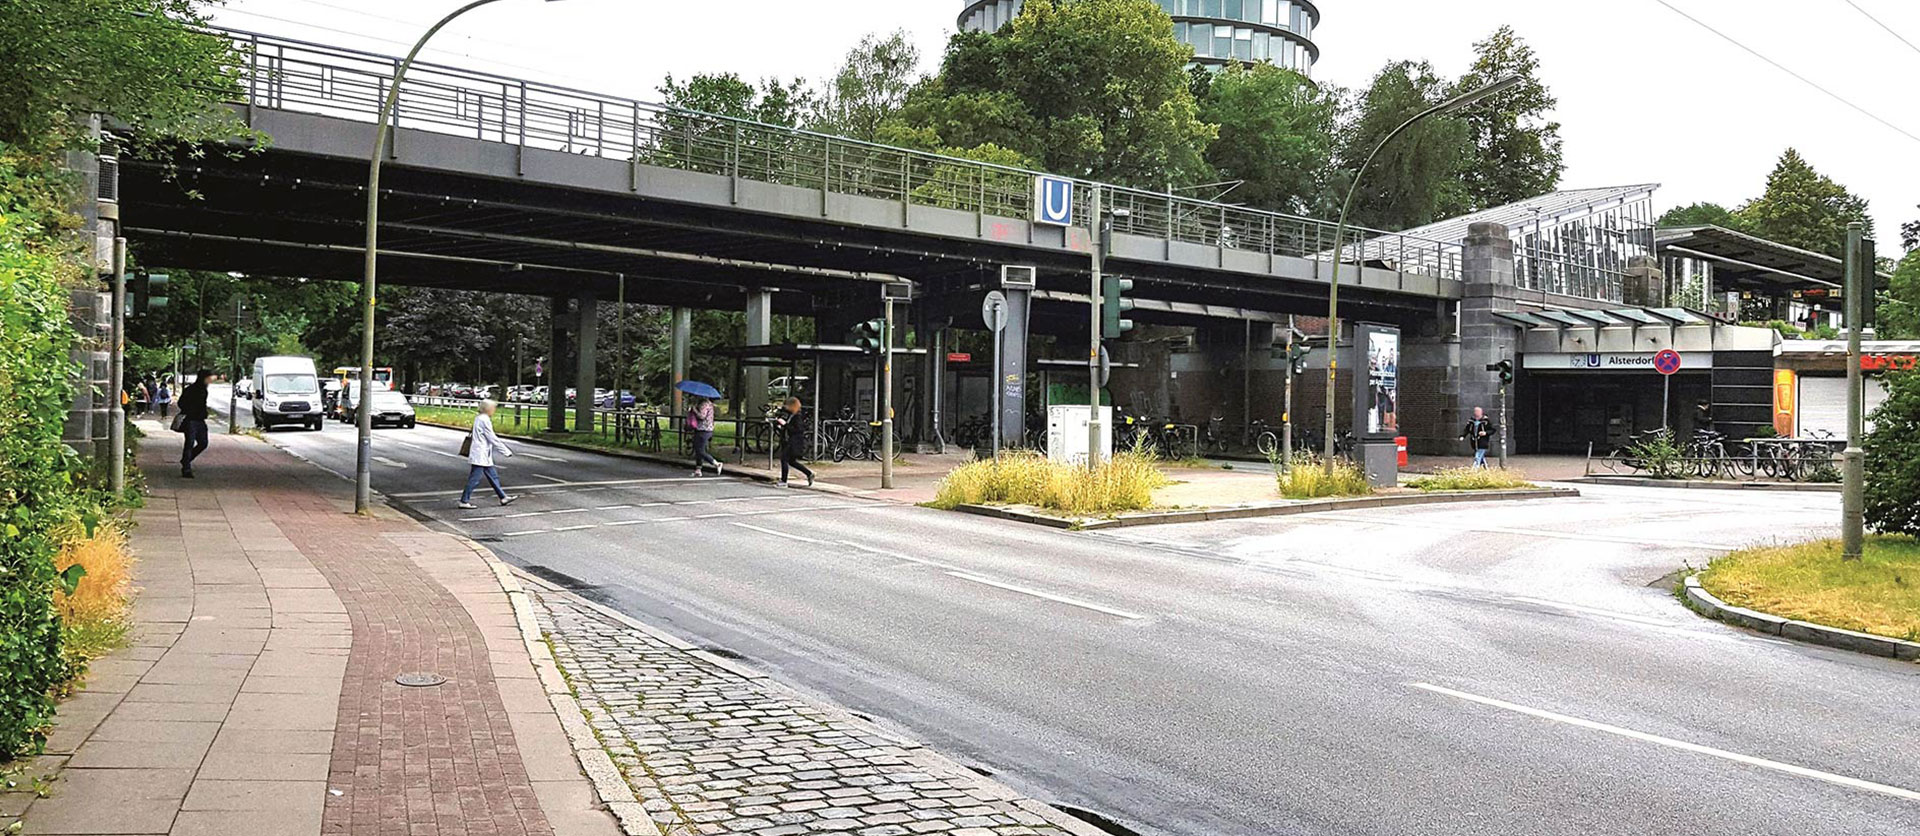 Fußgängerübergang und Buskehre an U-Bahn-Station "Alsterdorf" in der Hindenburgstraße.